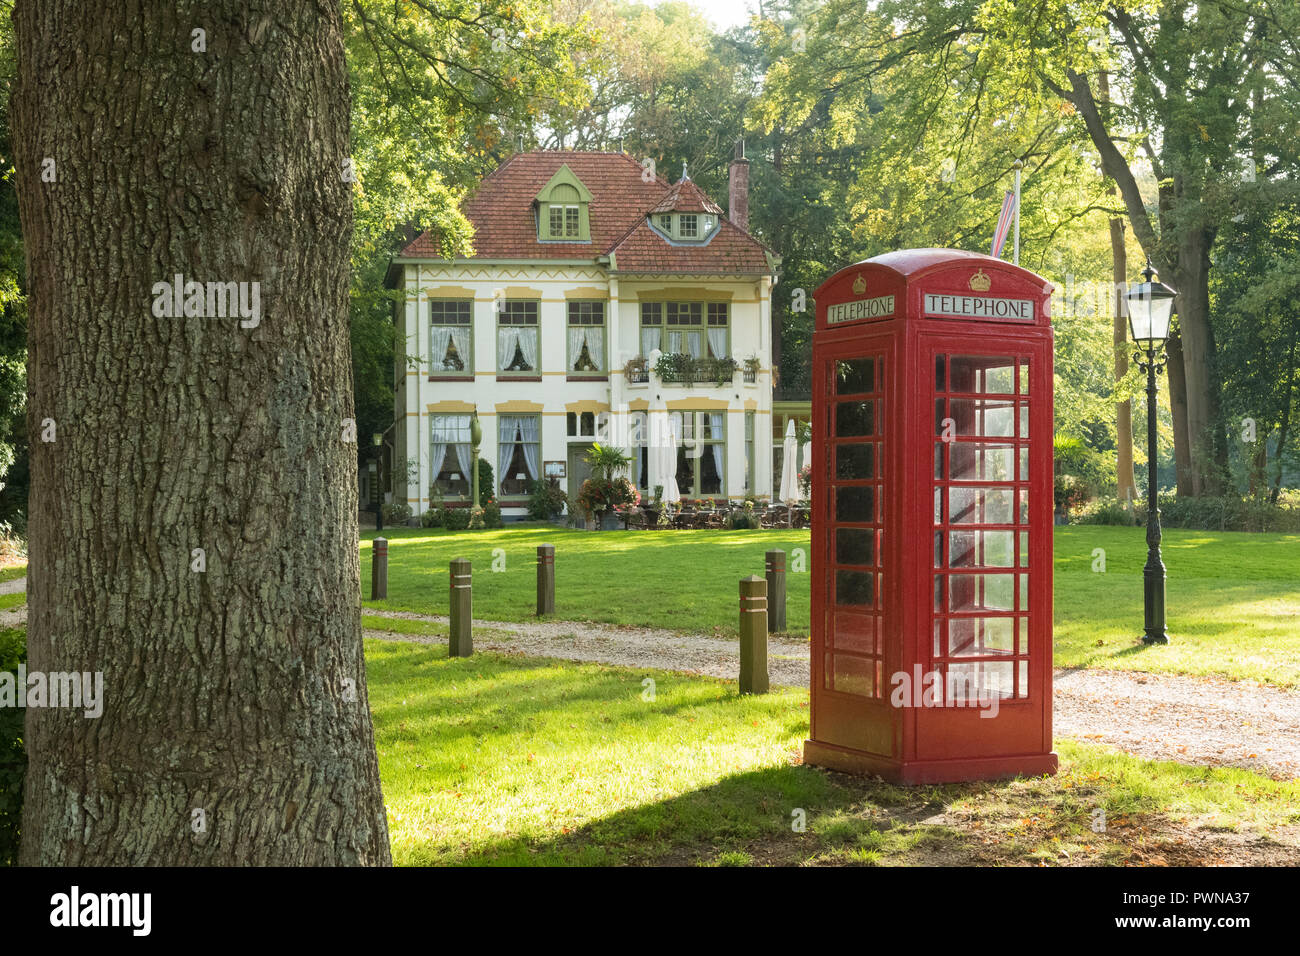 English Tea Room - "Tea Time" - und die rote Telefonzelle in Echten, Drenthe, Niederlande Stockfoto